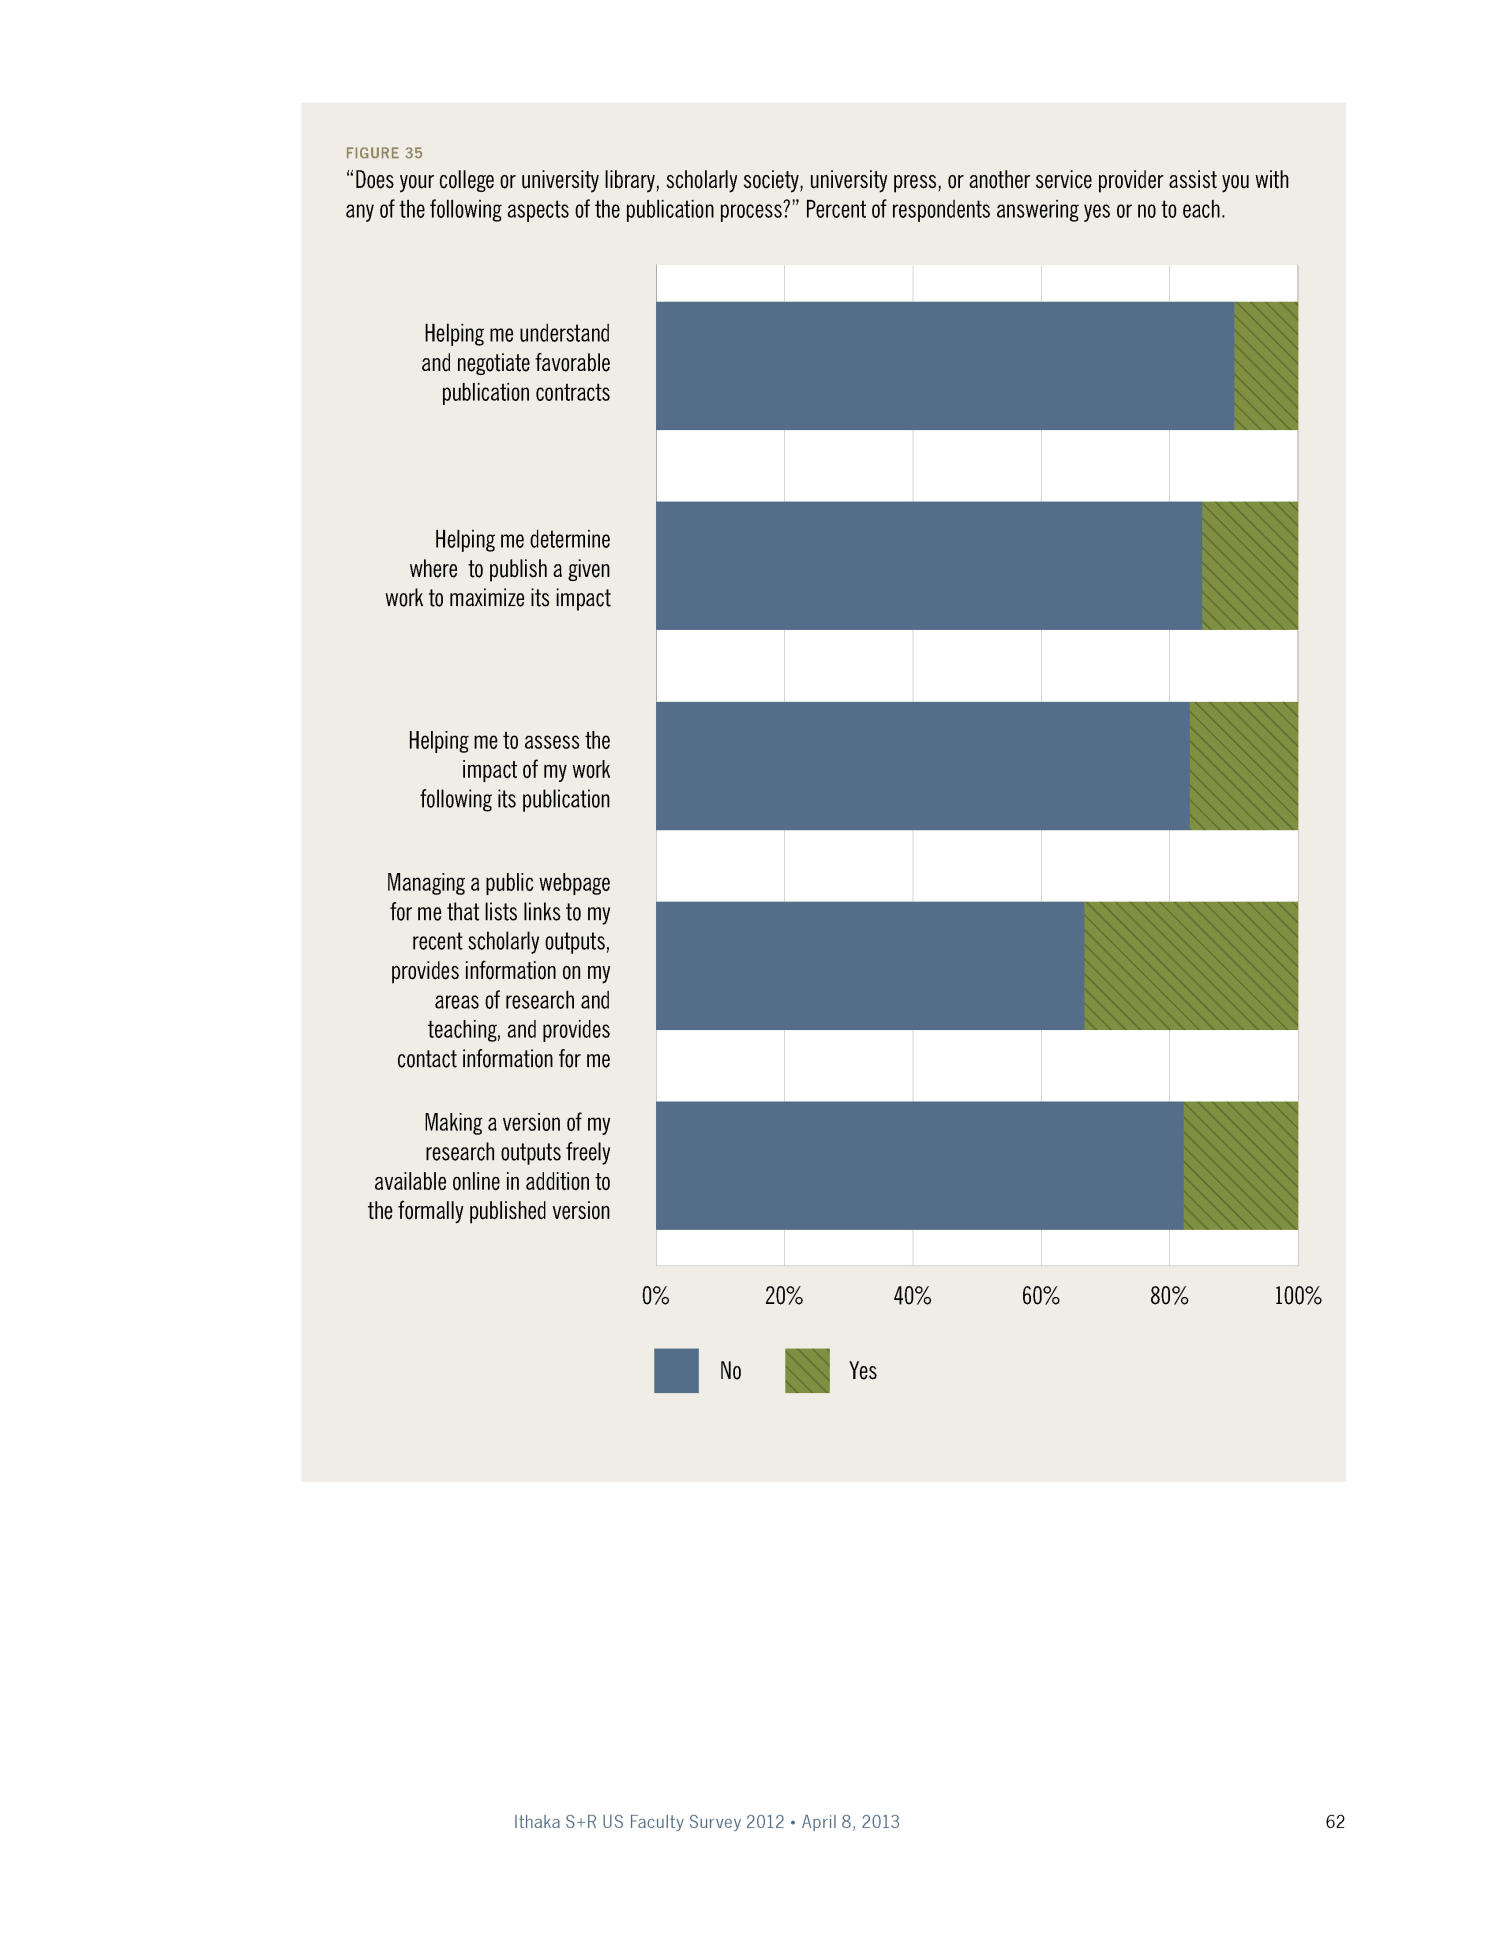 The Ithaka S+R US Faculty Survey 2012
                                                
                                                    62
                                                